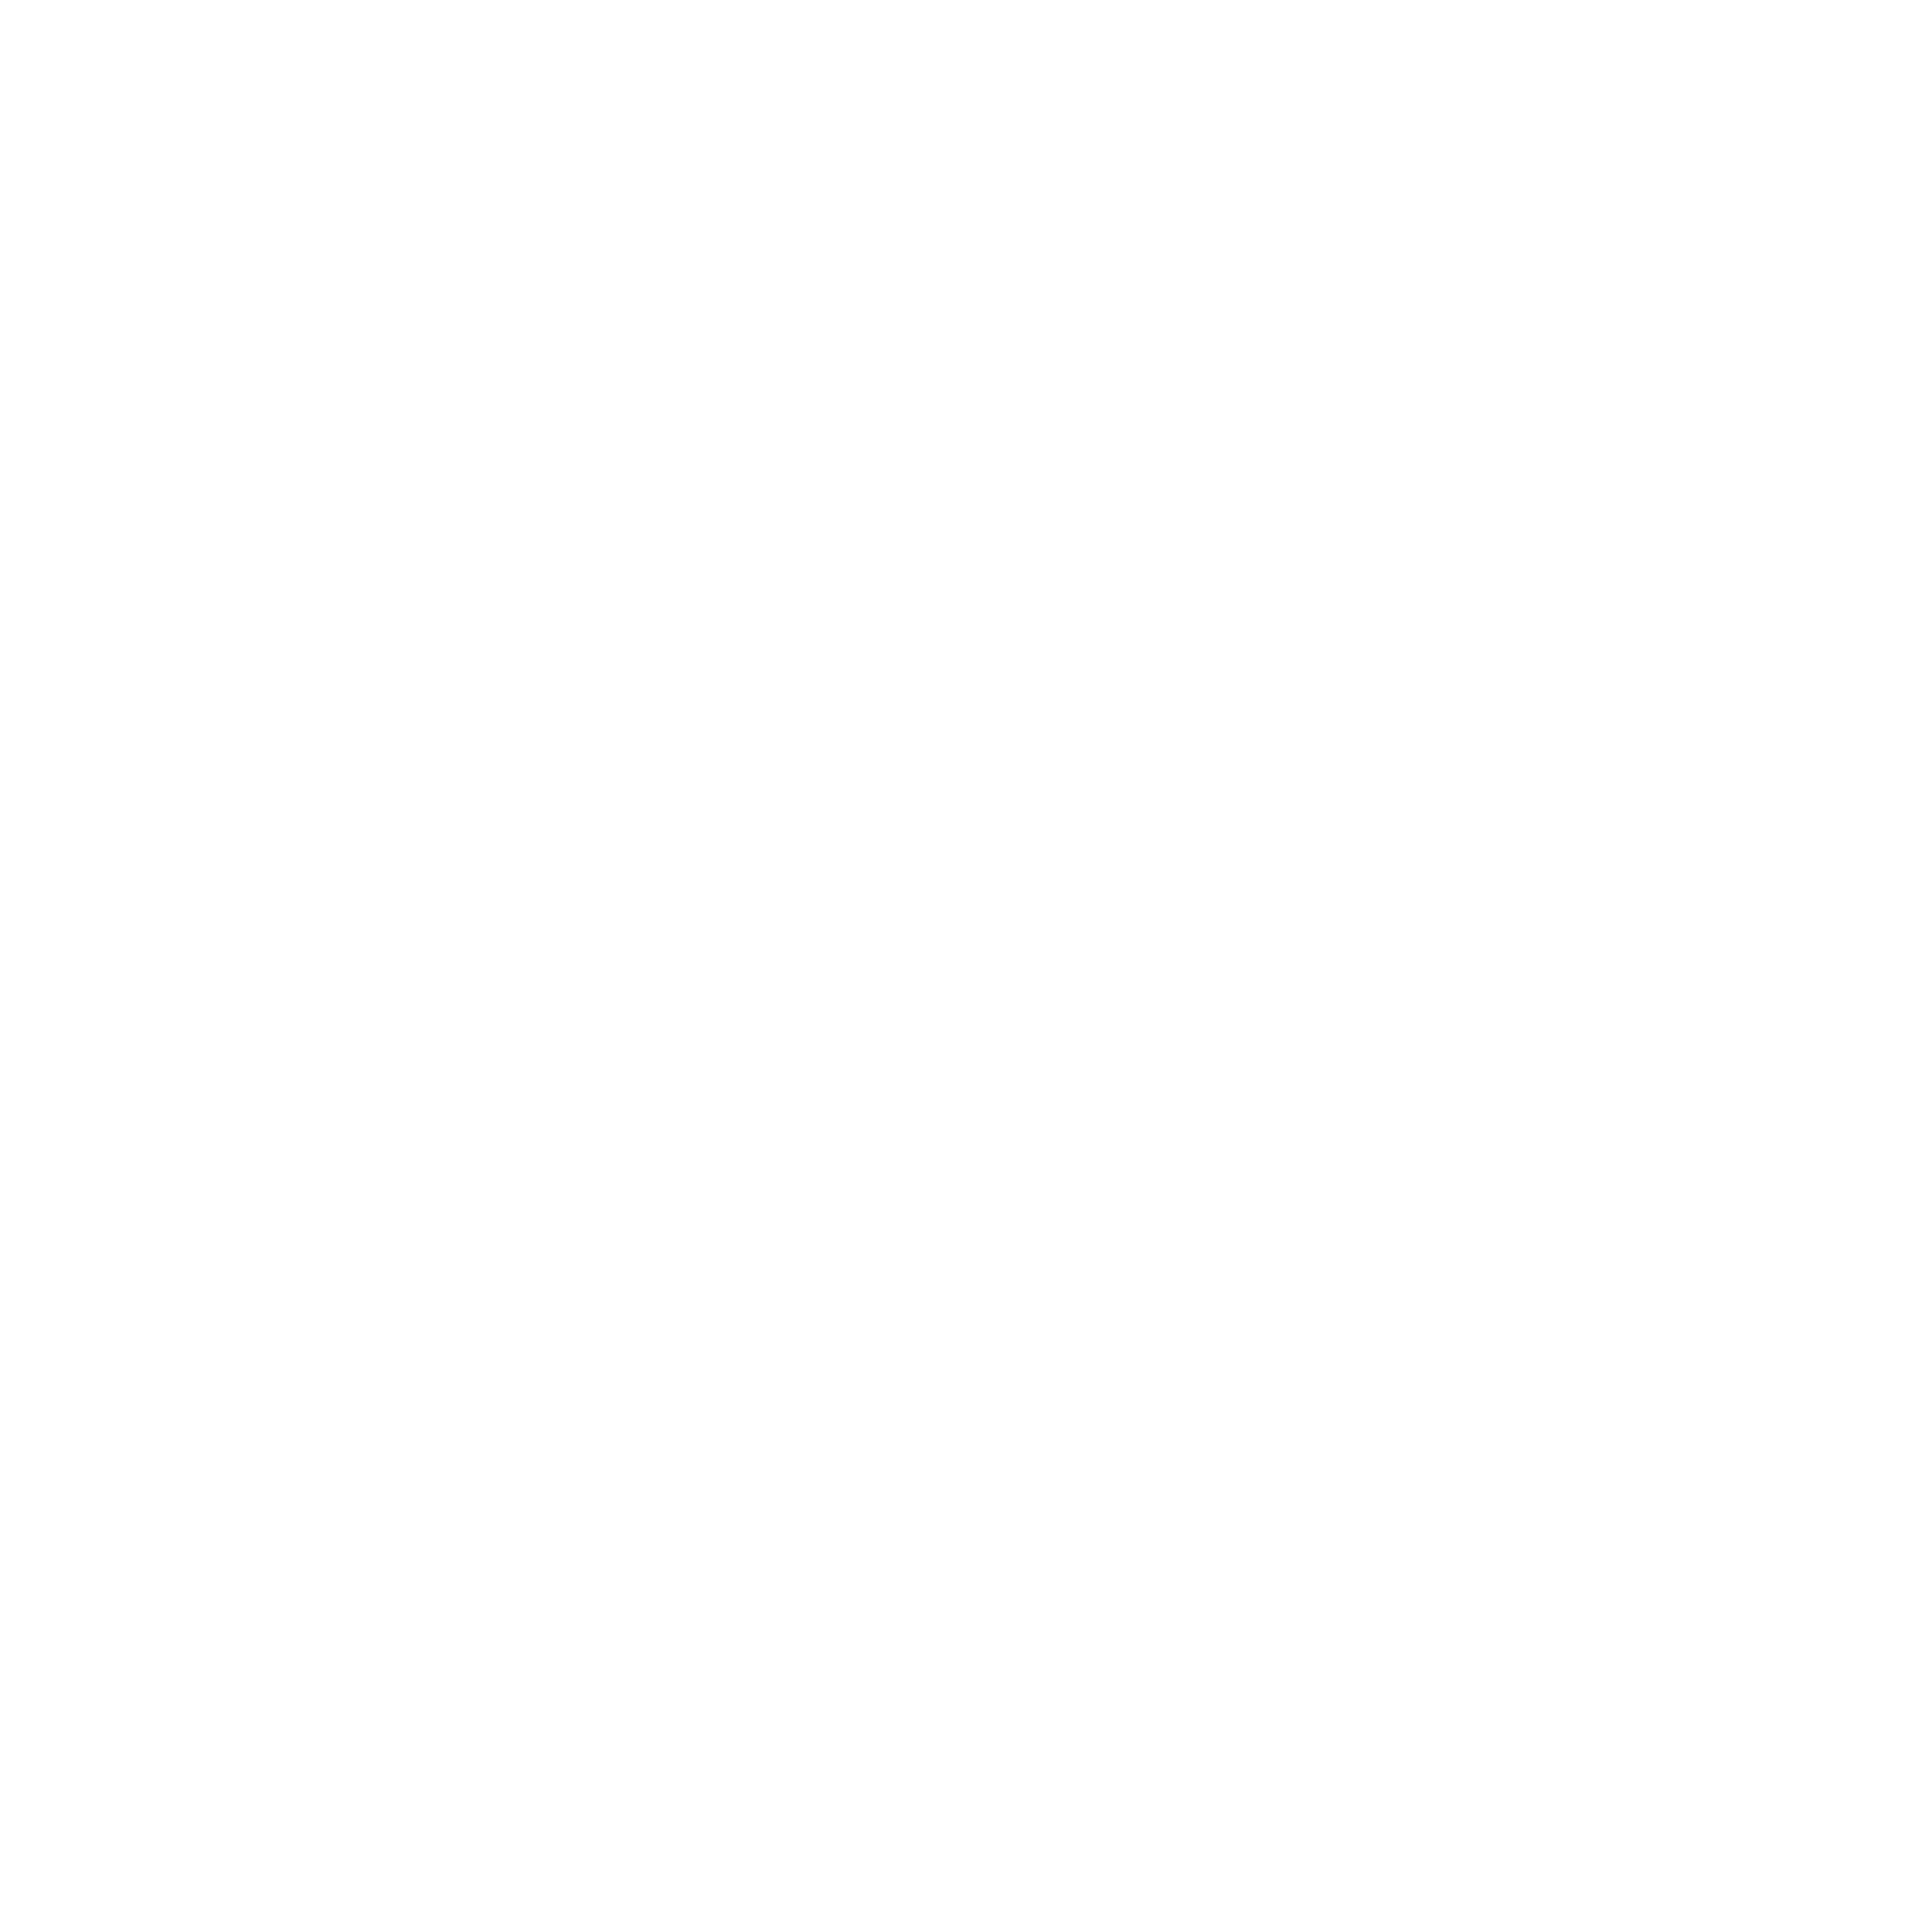 jordan logo white png